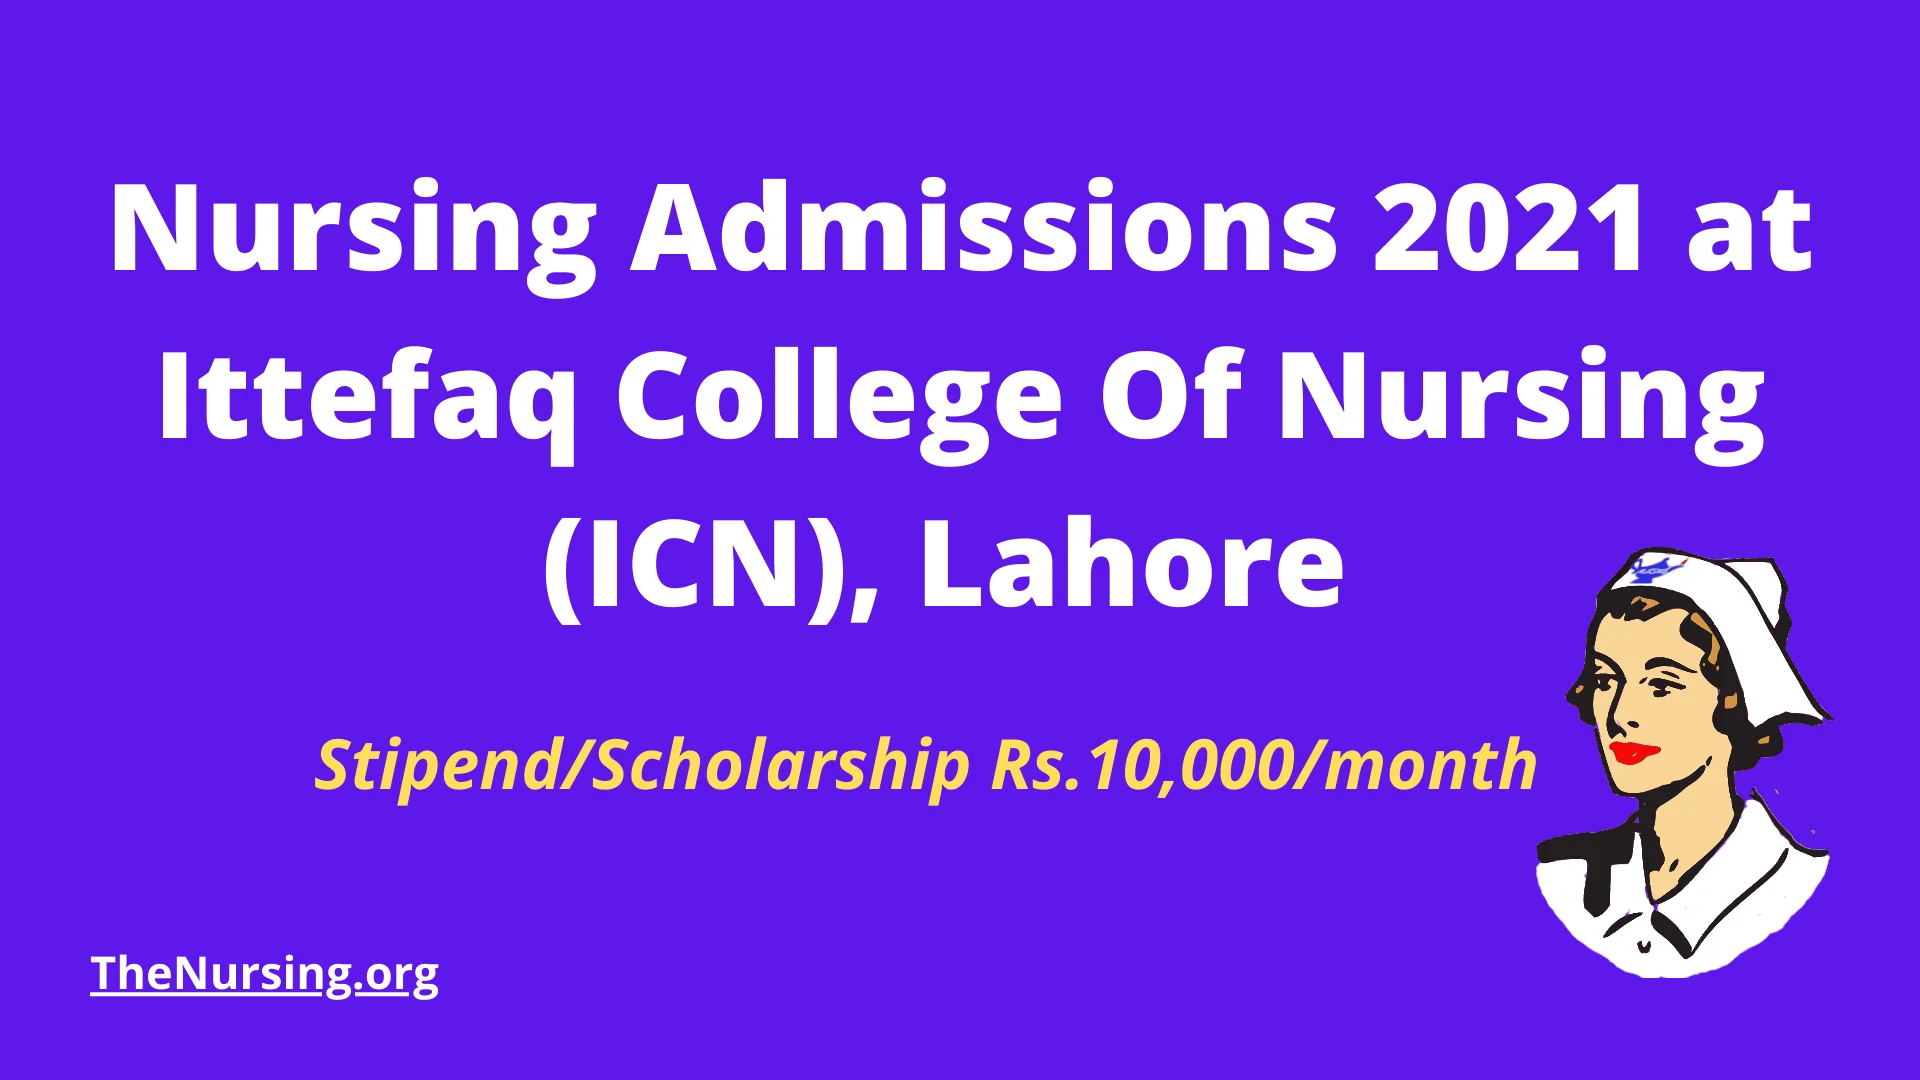 Nursing-Admissions-2021-at-Ittefaq-College-Of-Nursing-ICN-Lahore-1.webp